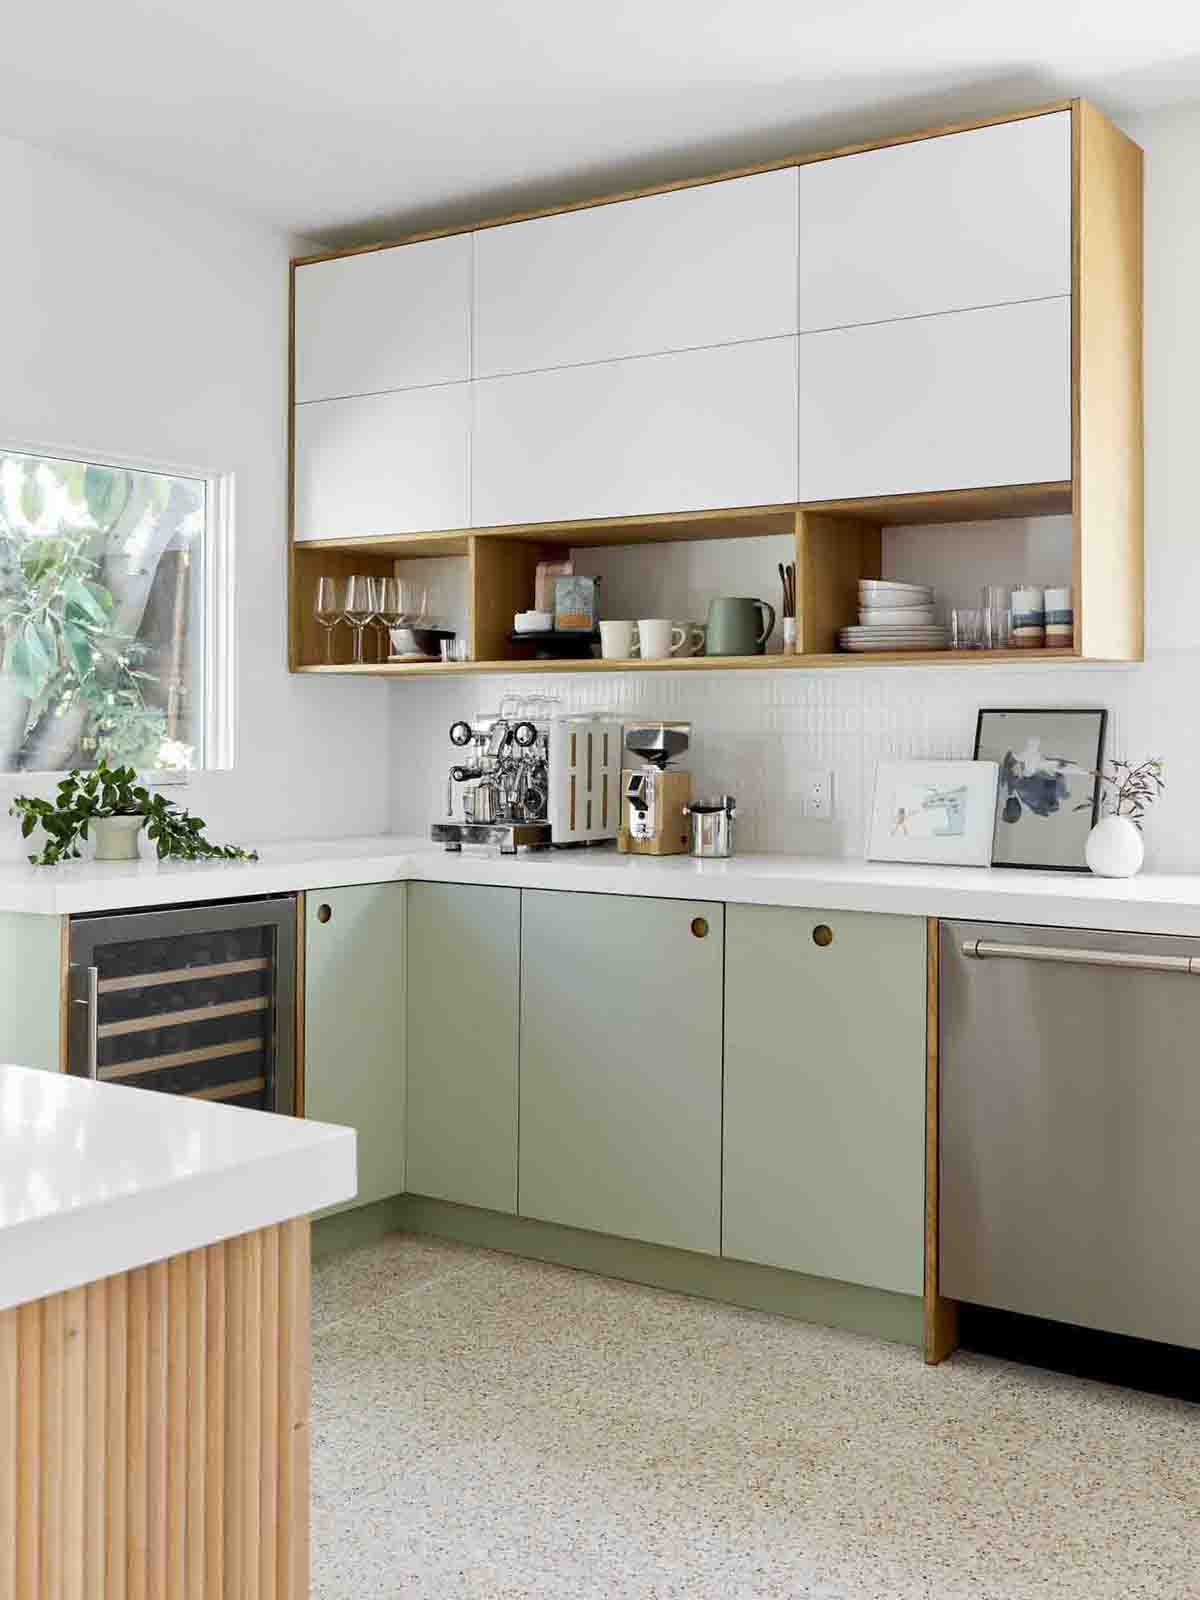 کابینت سبز و سفید ام دی اف مات در آشپزخانه مدرن با بین کابینتی سفید